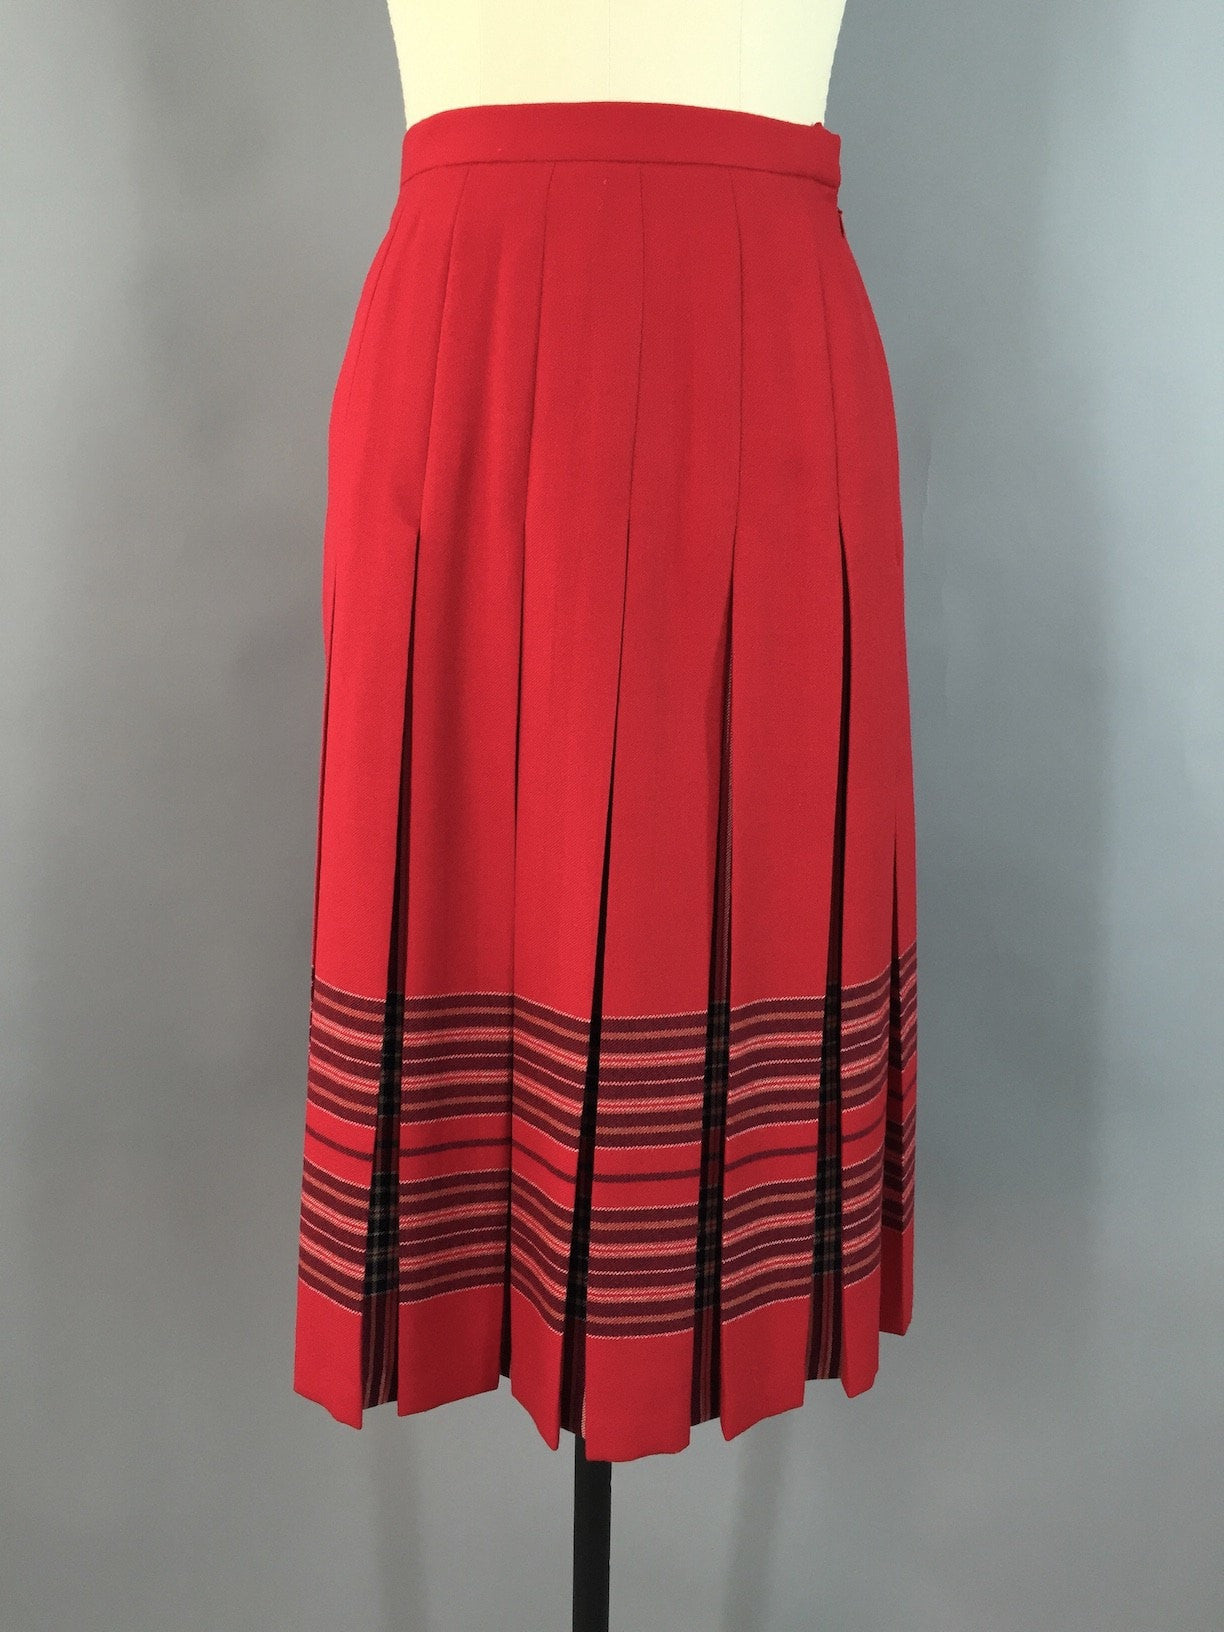 Vintage Wool Midi Skirt / Highland Tartan / Red Wool Plaid / Pleated Kilt - ThisBlueBird